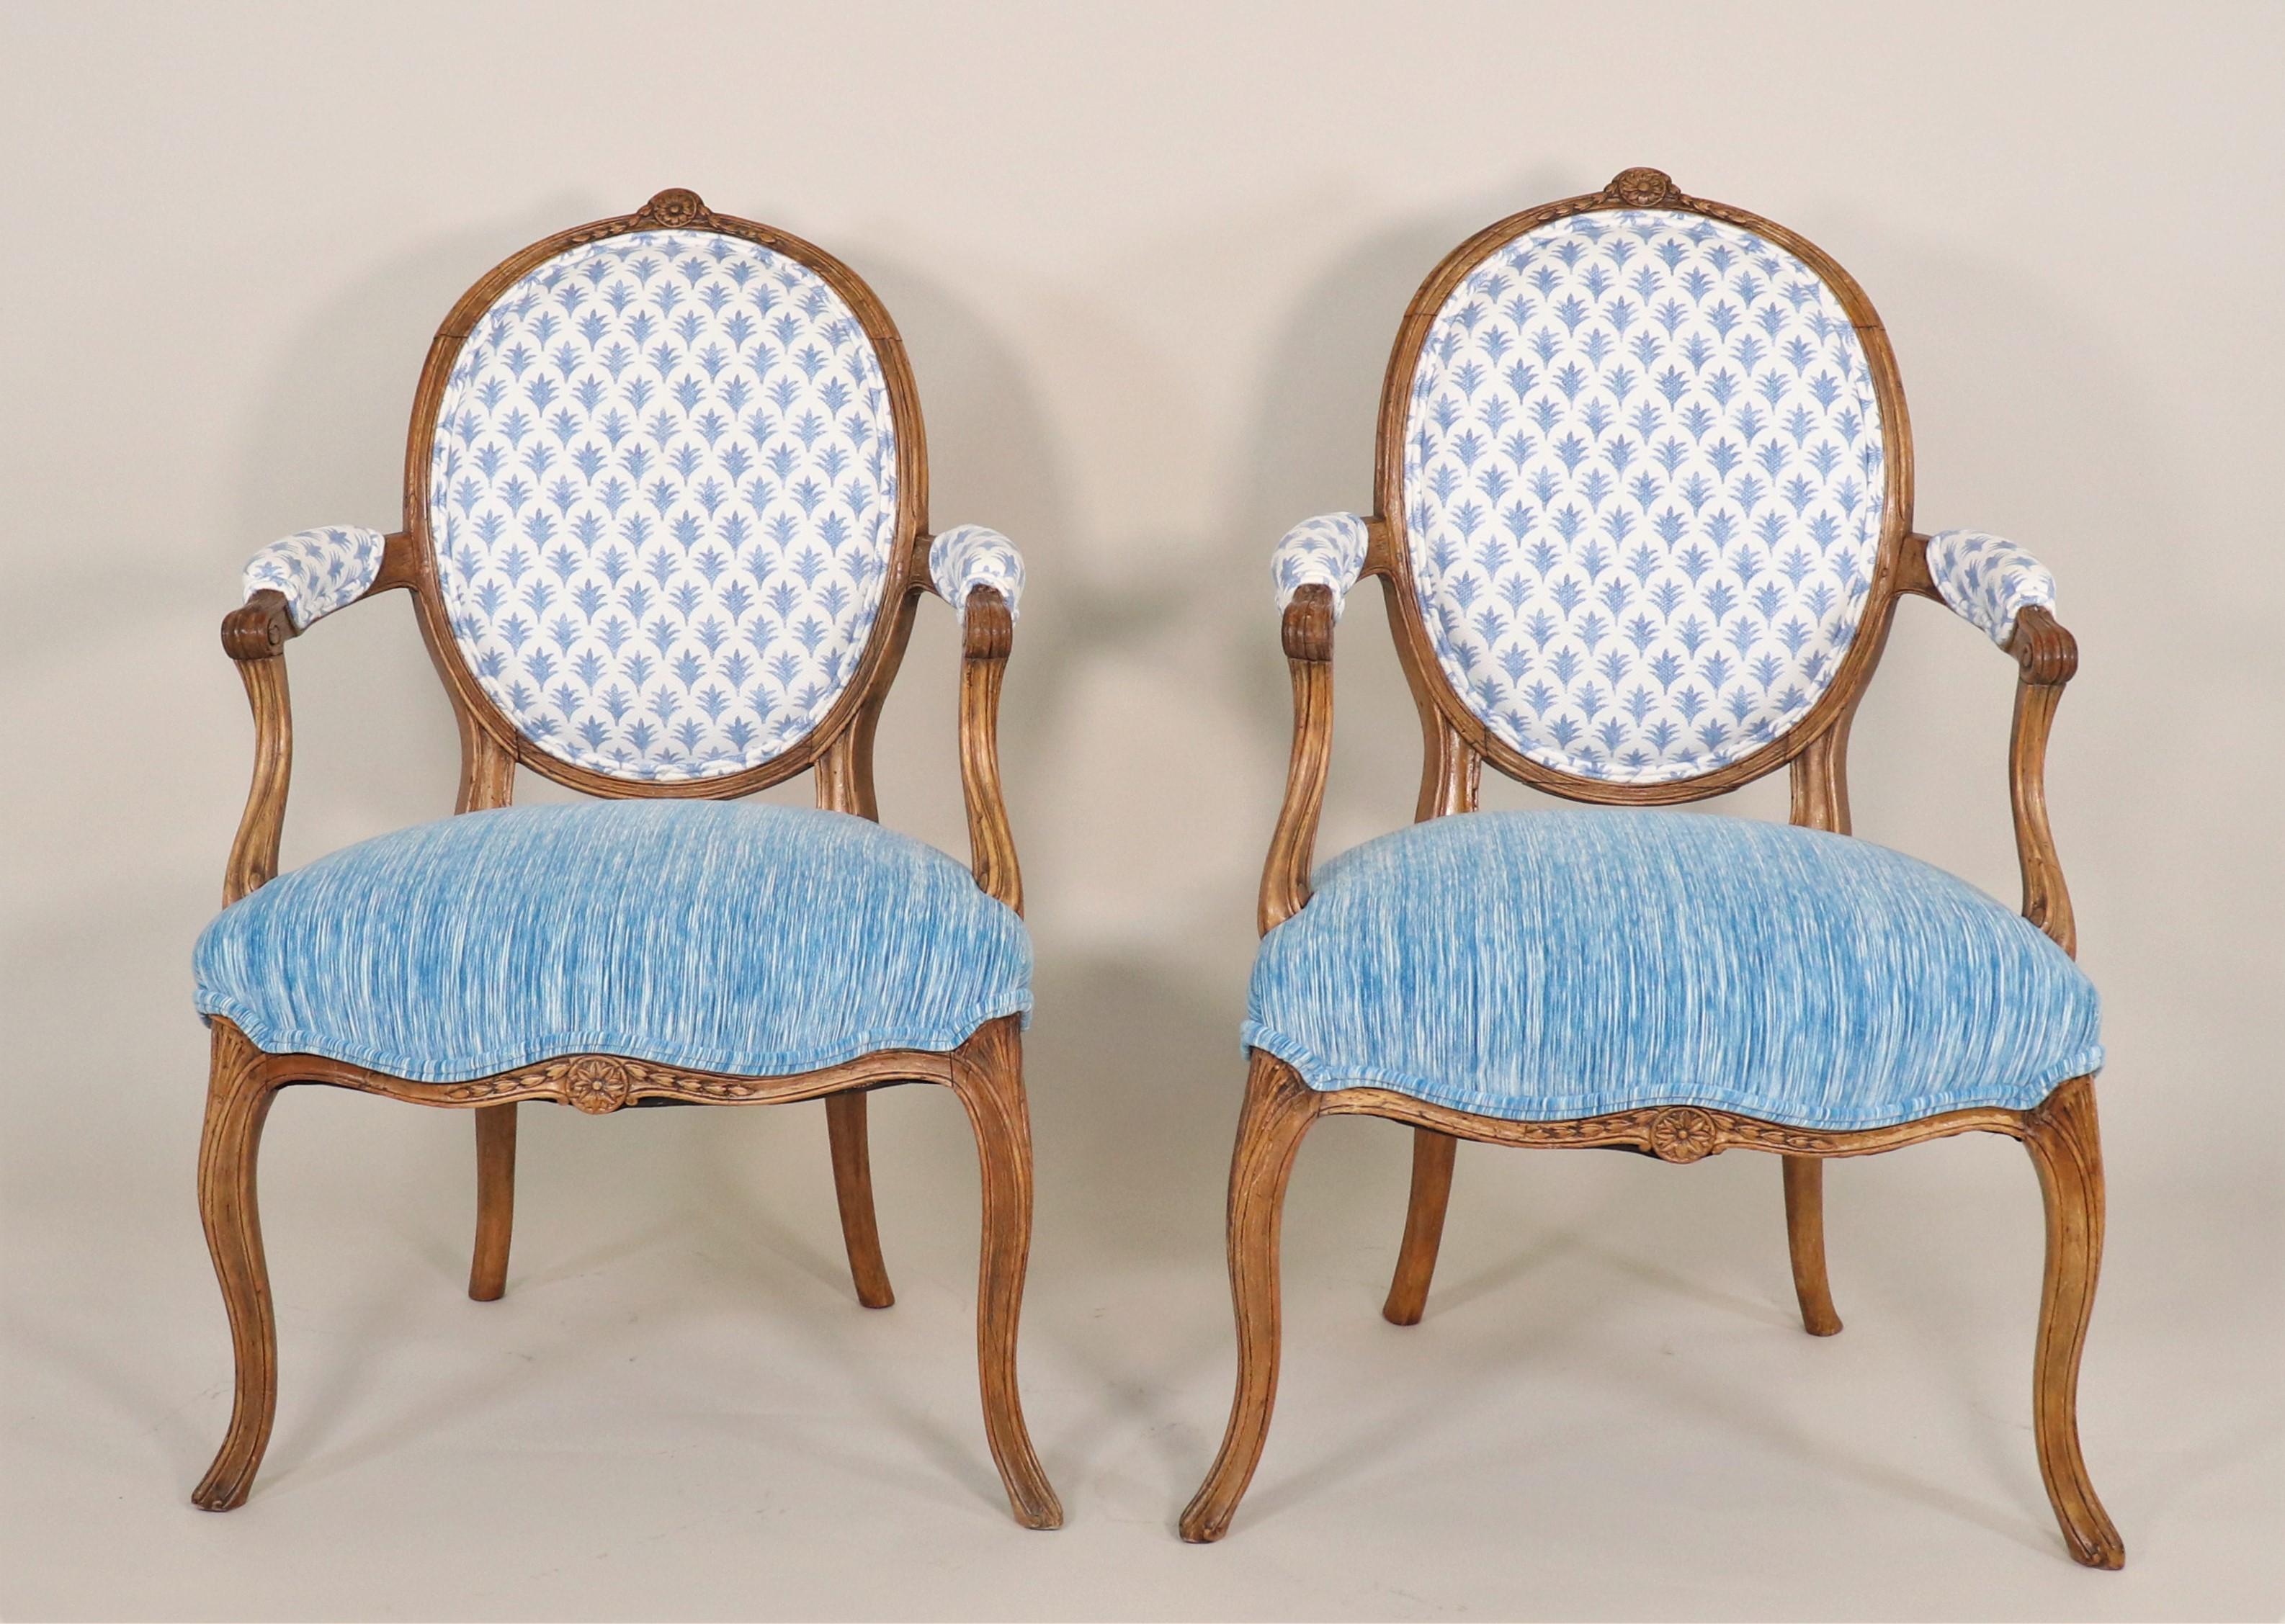 Paar französische Fauteuils im Régence-Stil aus der Mitte des 19. Jahrhunderts: Dieses französische Sesselpaar im Régence-Stil versprüht französischen Charme und wurde mit modernen Stoffen aktualisiert, die dem Geist der Epoche entsprechen. Die